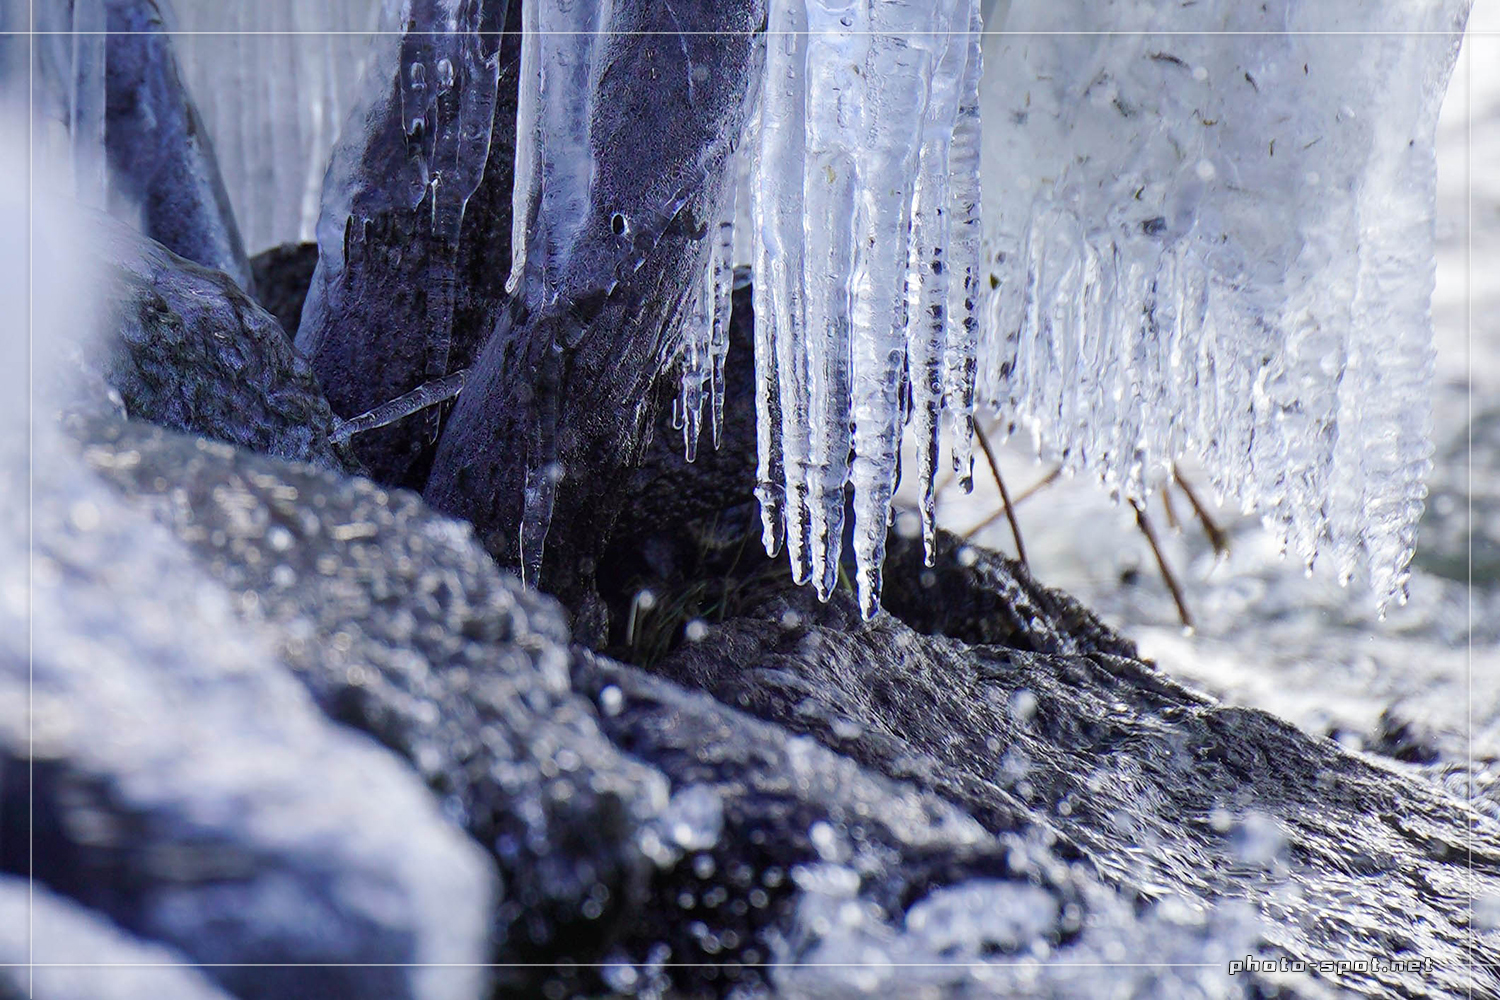 琵琶湖岸緑地に出現した「しぶき氷」はまるで氷のシャンデリア